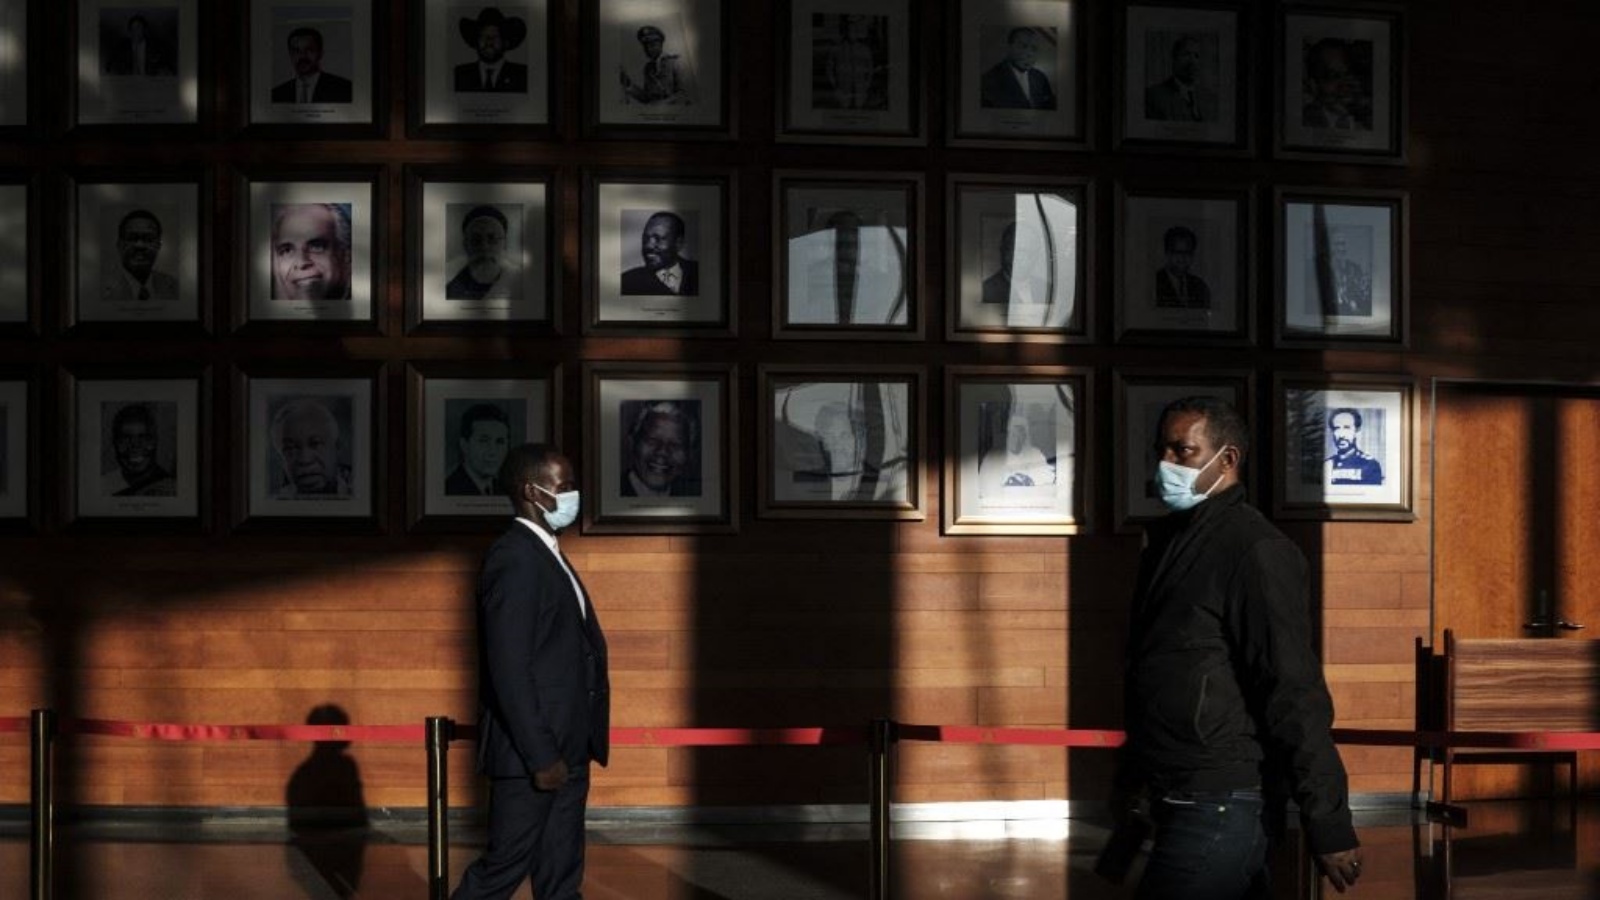 أشخاص يمرون قرب جدار علقت عليه صور رؤساء سابقين للاتحاد الأفريقي قبل افتتاح الدورة العادية الـ36 لمؤتمر الاتحاد الأفريقي في مقره في أديس أبابا 18 فبراير 2023